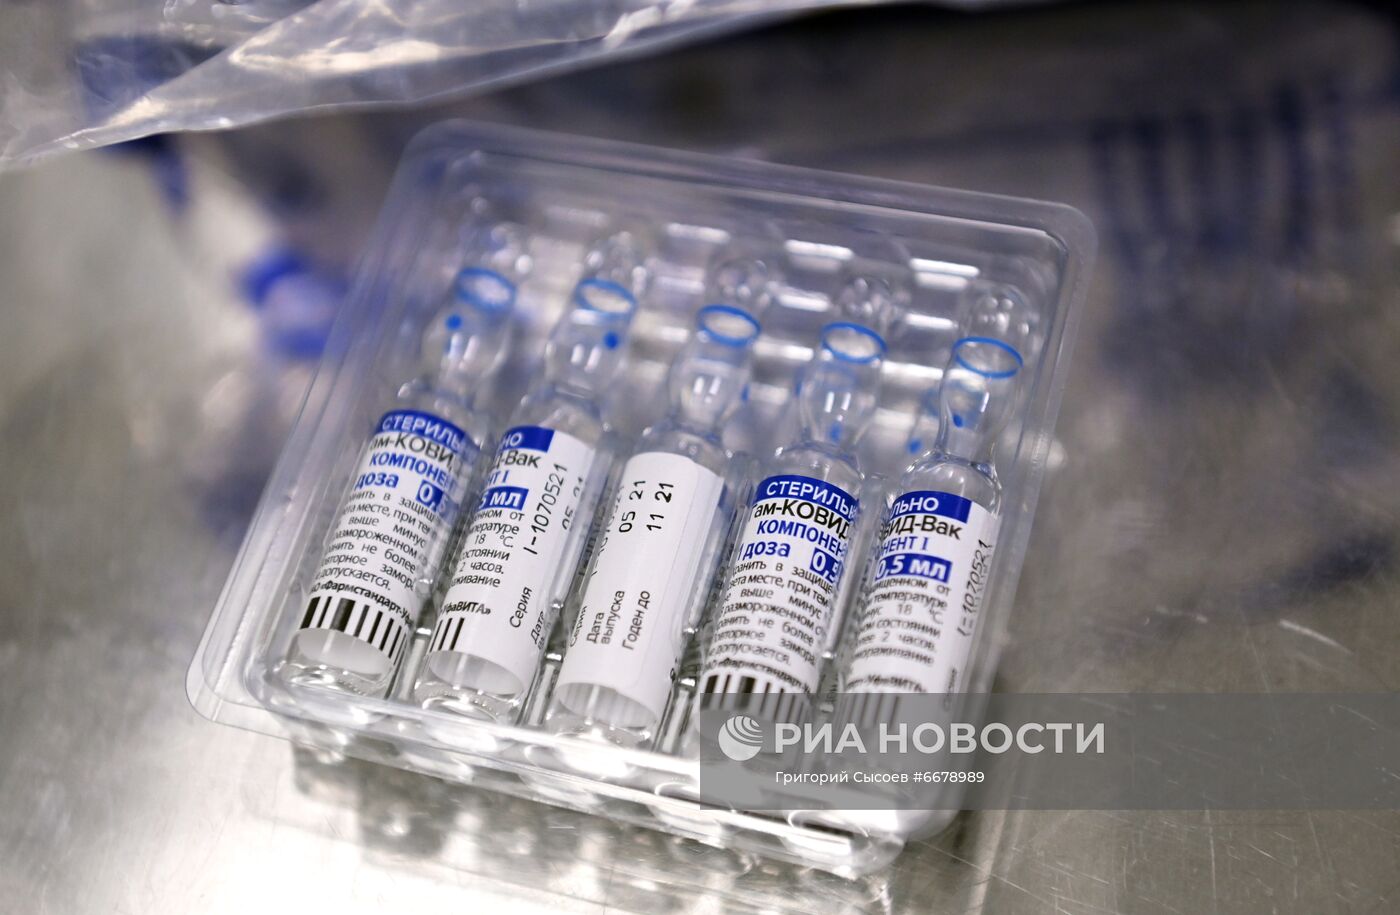 Вакцинация от COVID-19 в Москве 